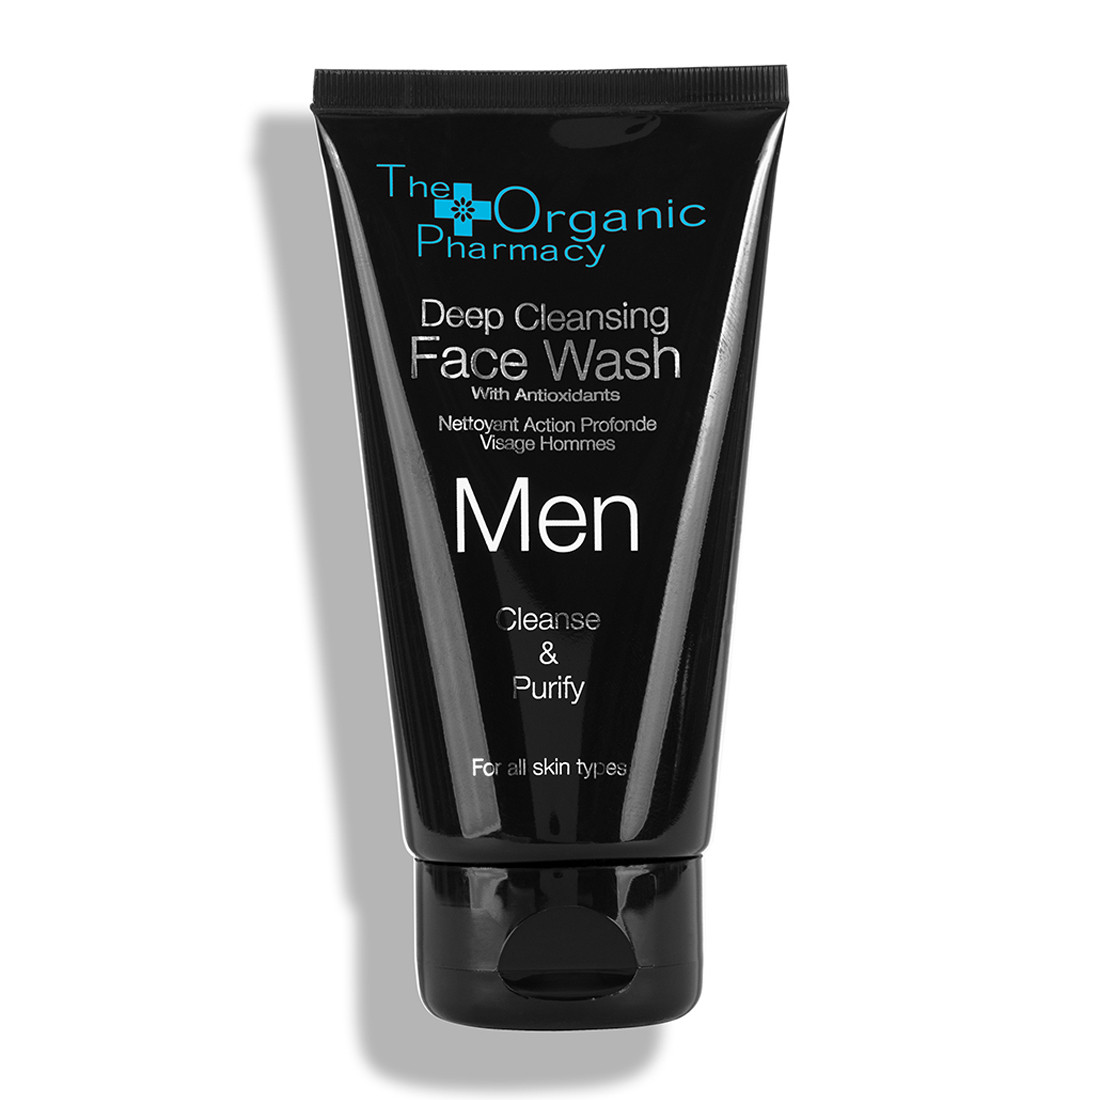 Відгуки про The Organic Pharmacy Men Deep Cleansing Face Wash Средство для глубокого очищения